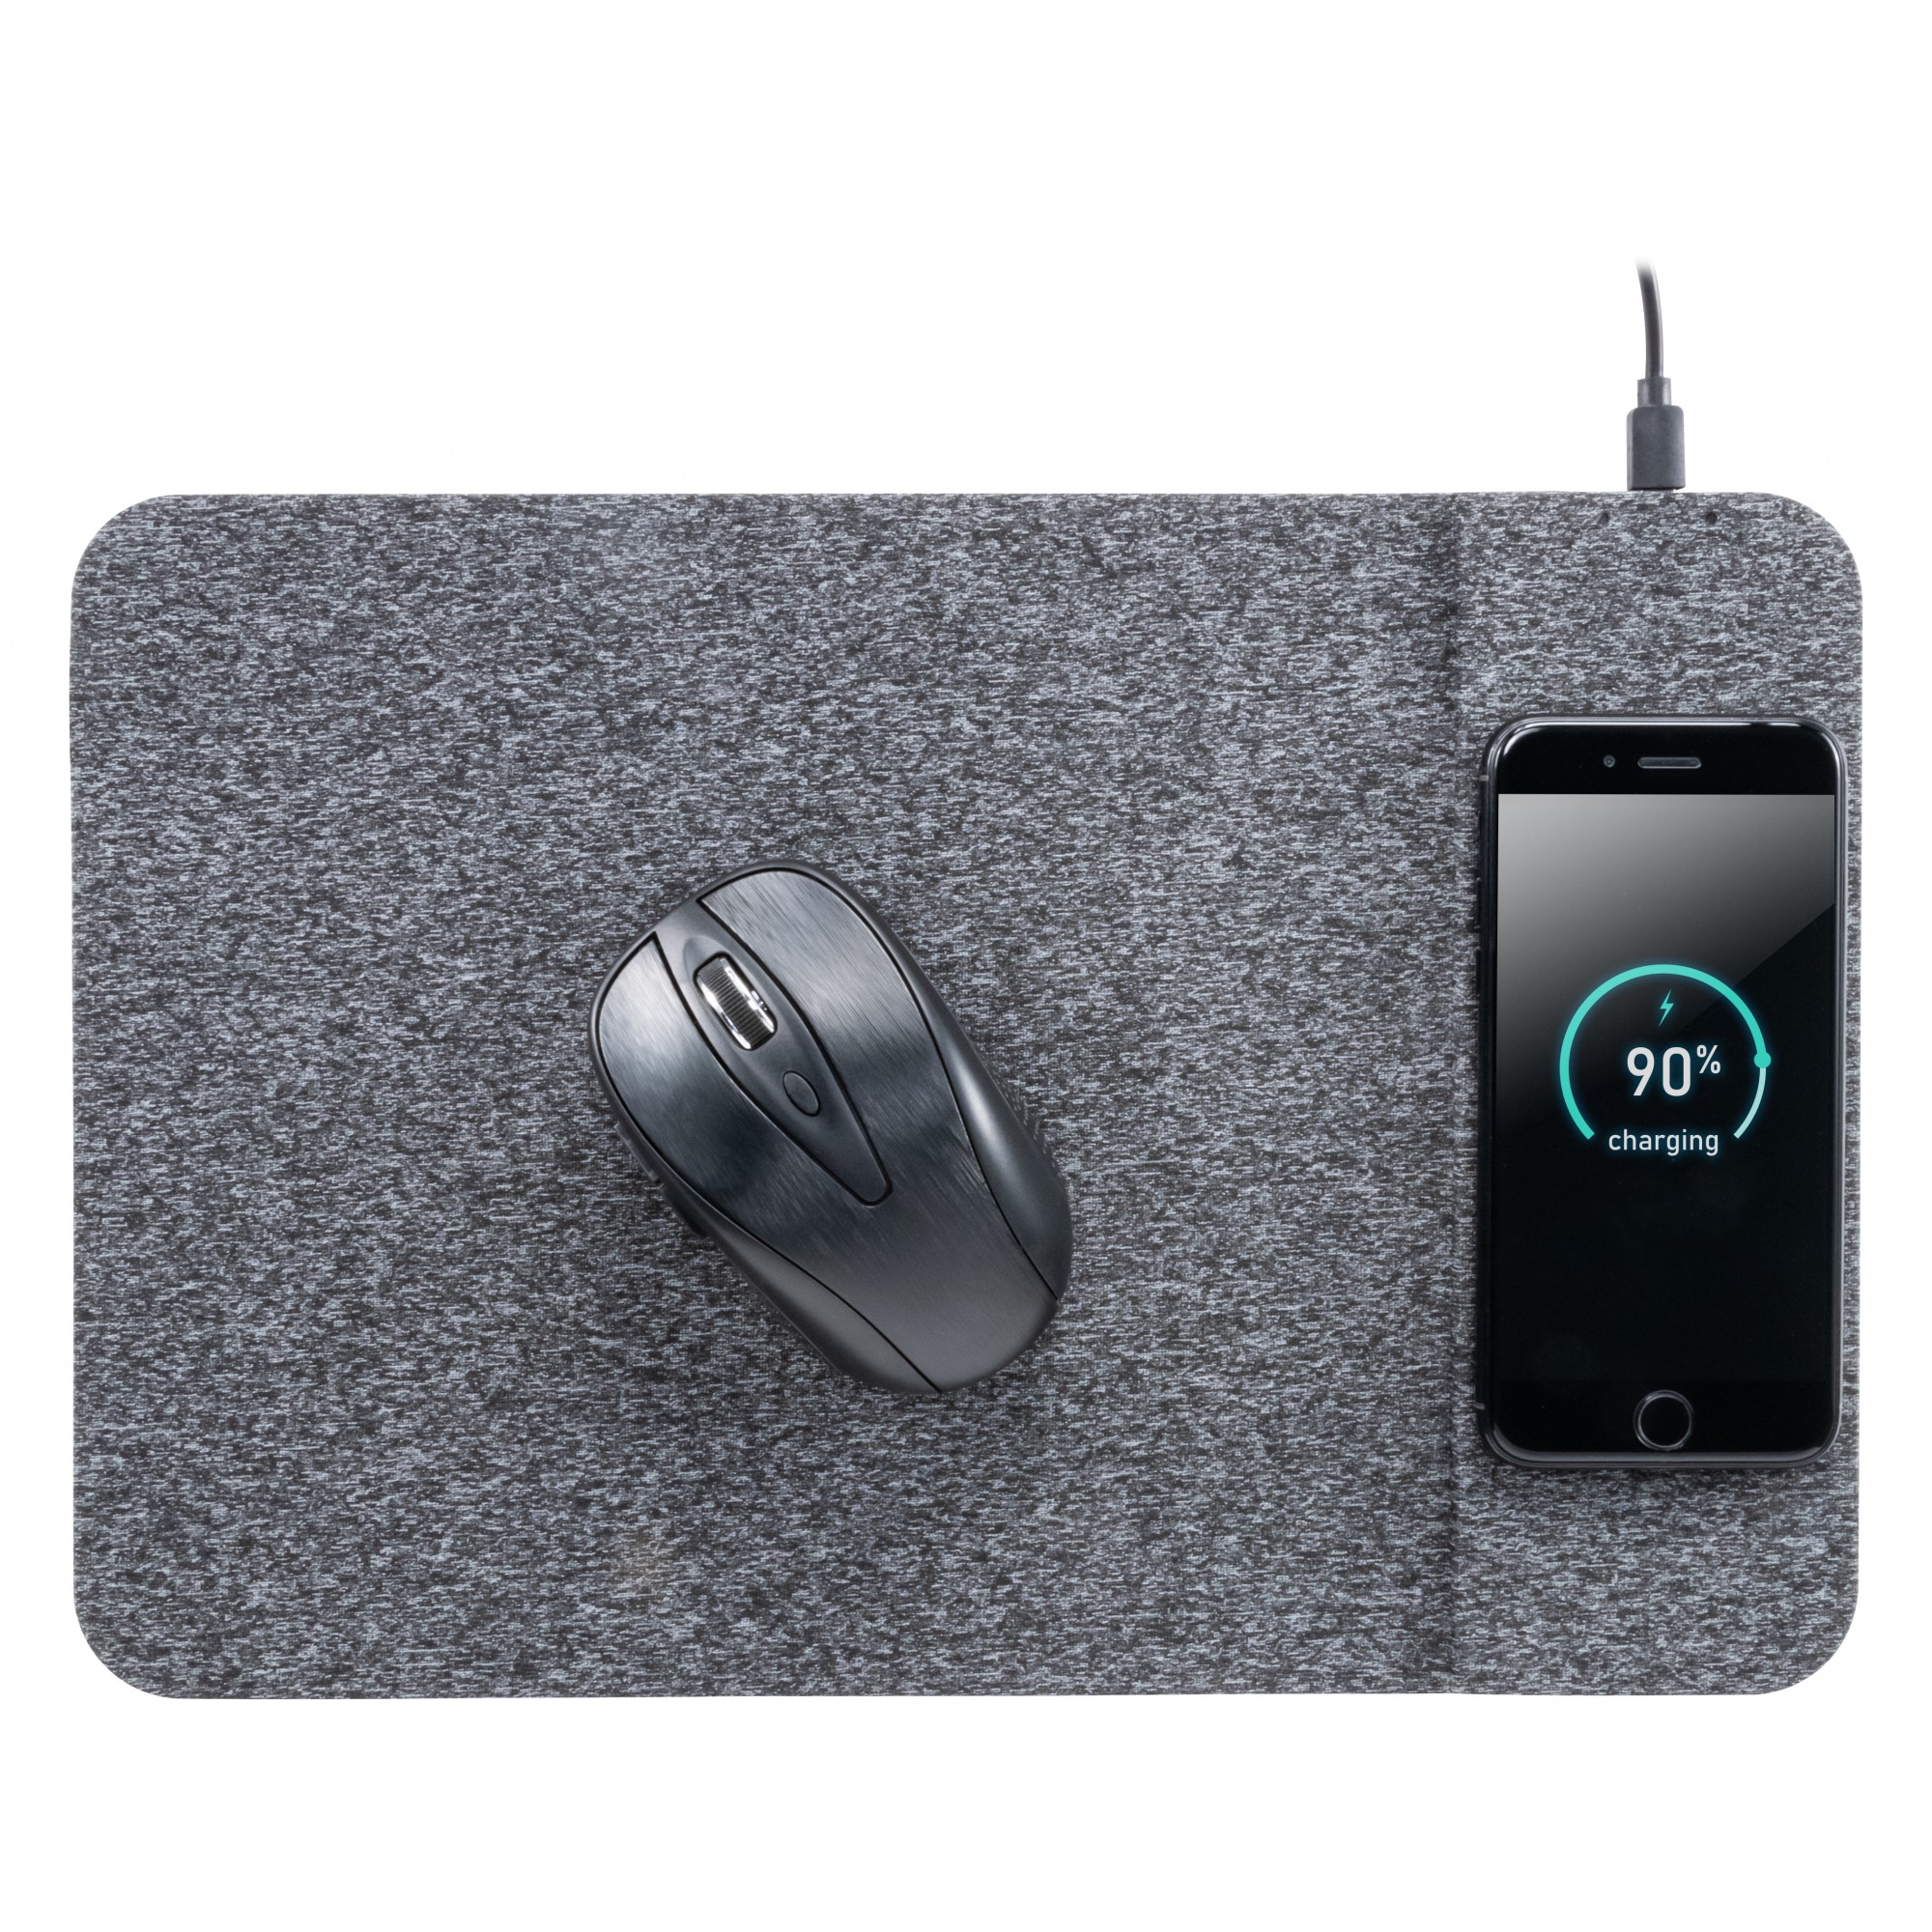 Sıcak Satış 2 in 1 Hızlı Kablosuz Şarj Mouse Pad ile Özelleştirilmiş Kumaş Yüzeyde Bilgisayar Oyunları ve Ofis Çalışma için kullanım (MH-D85)